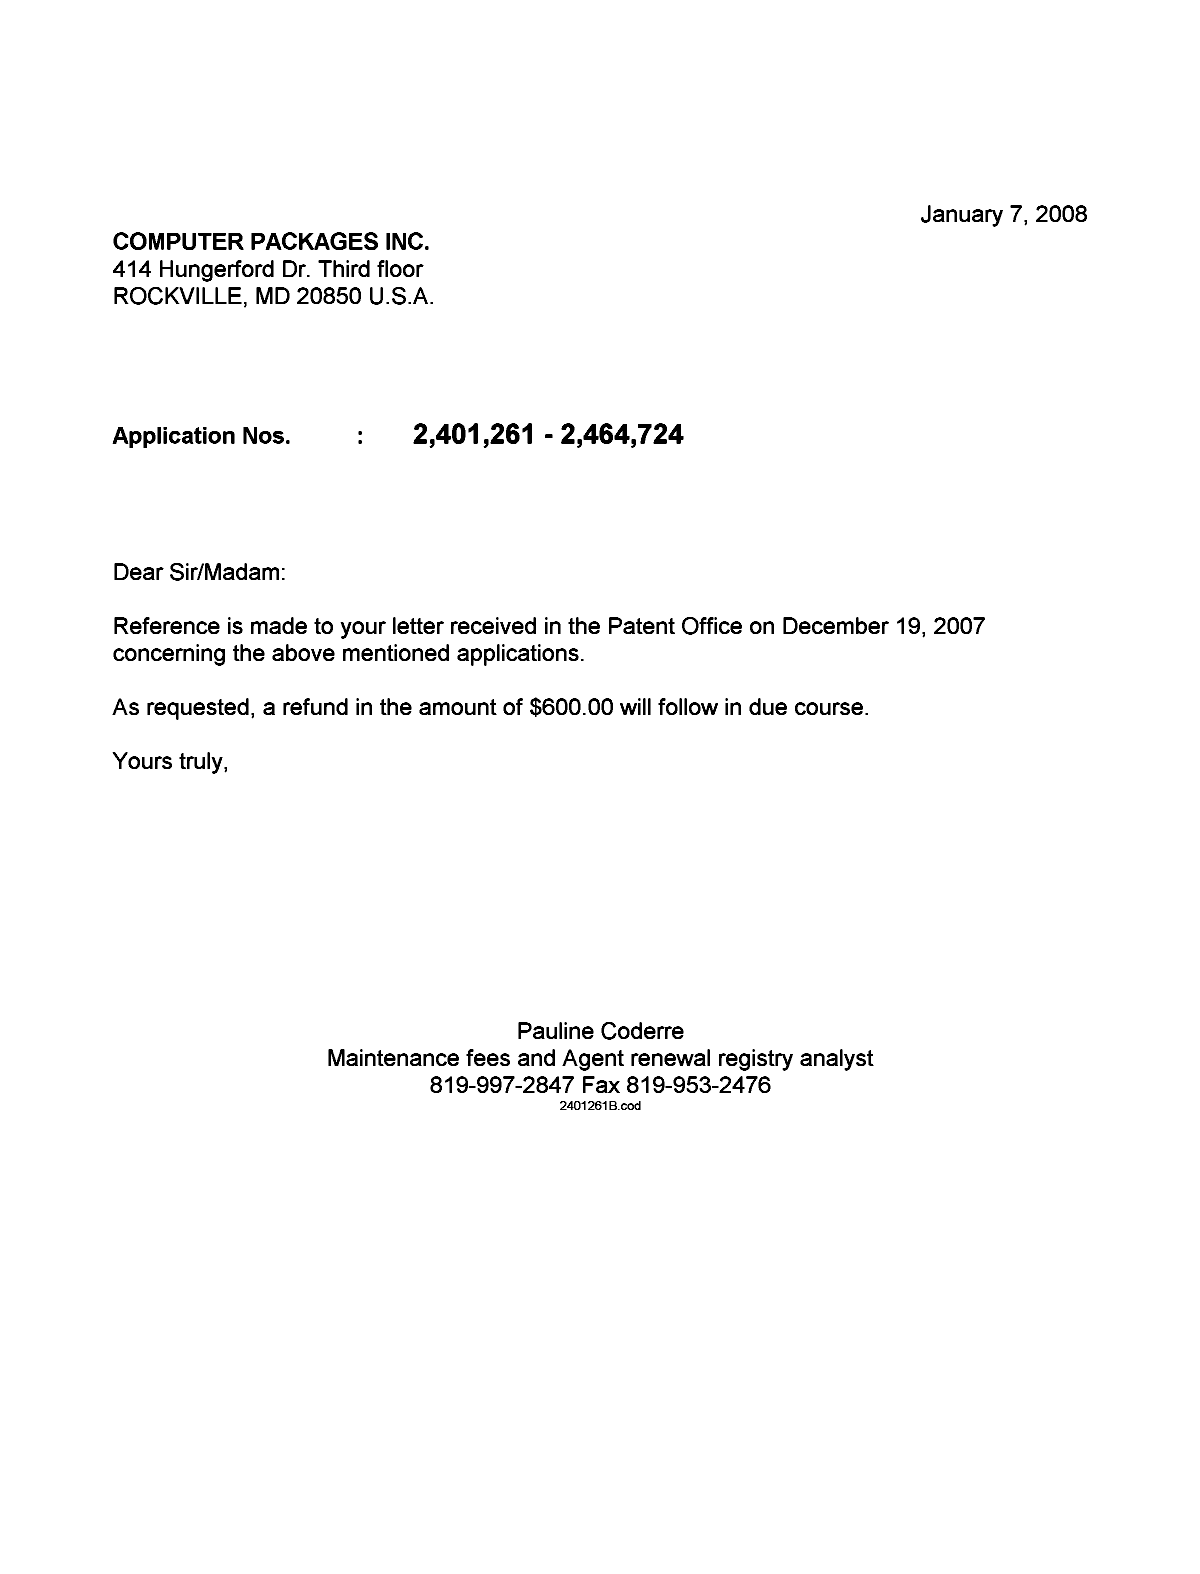 Document de brevet canadien 2464724. Correspondance 20080107. Image 1 de 1